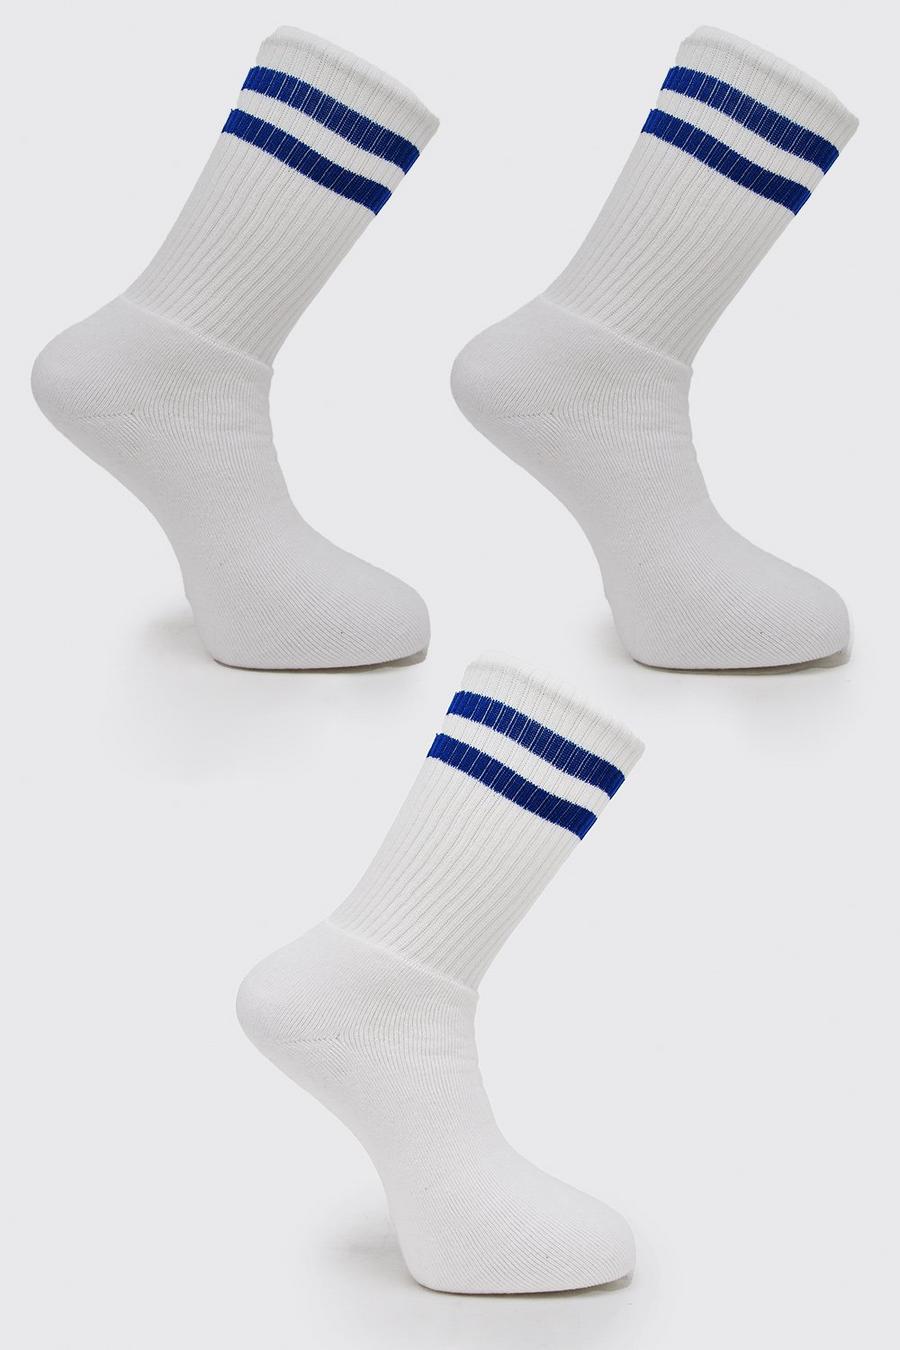 Pack de 3 pares de calcetines deportivos con rayas de colores, Blue azul